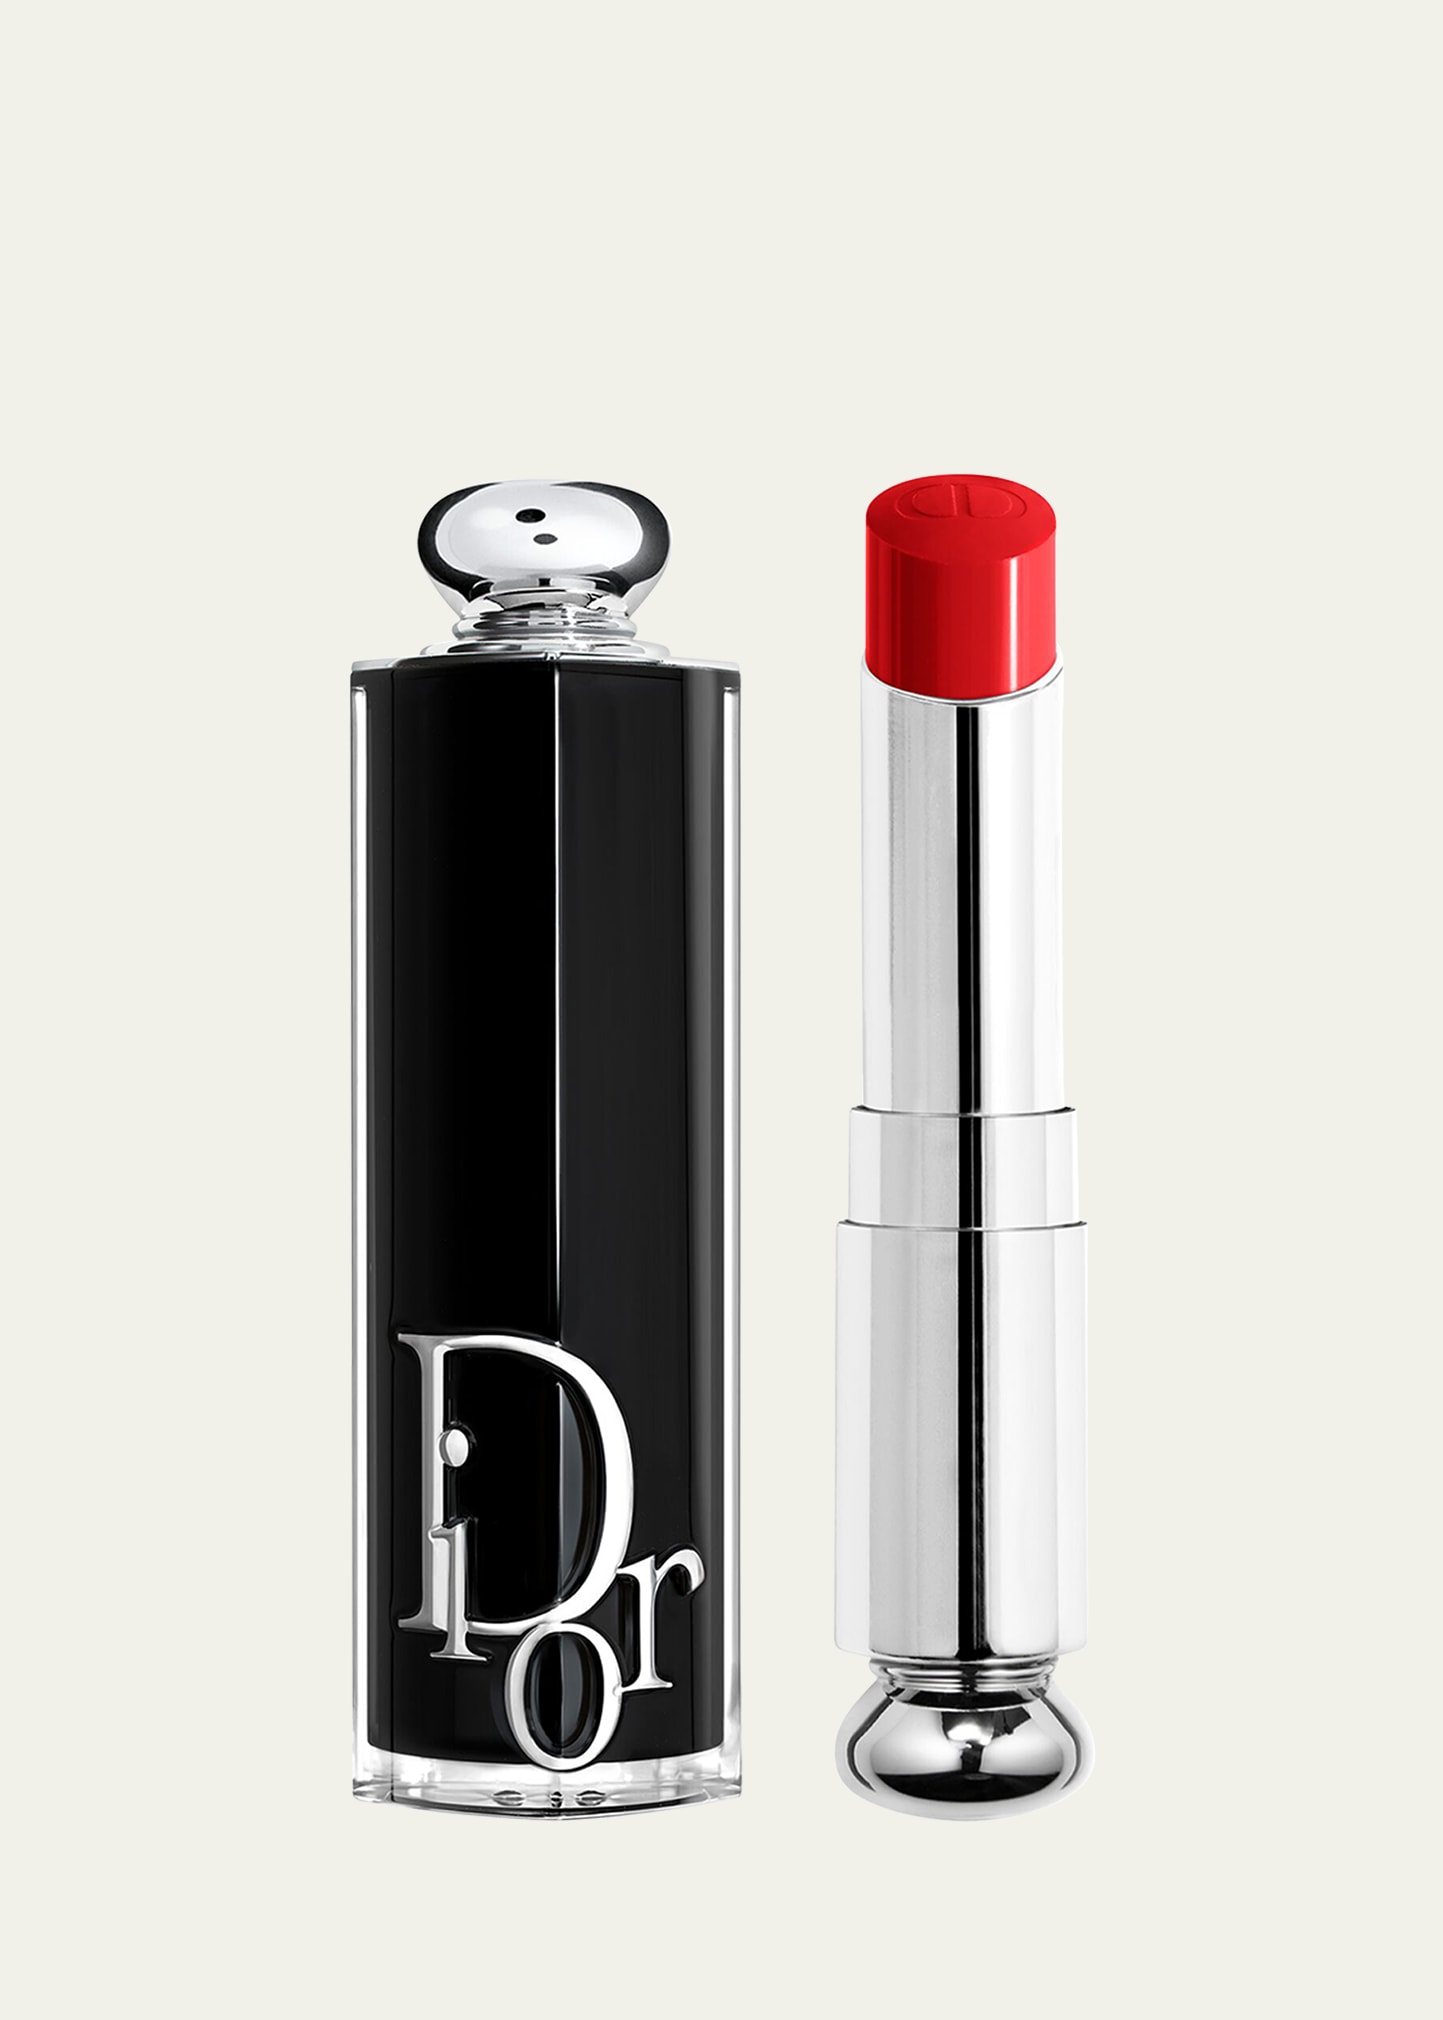 Dior Addict Refillable Shine Lipstick In 745 Re(d)volution